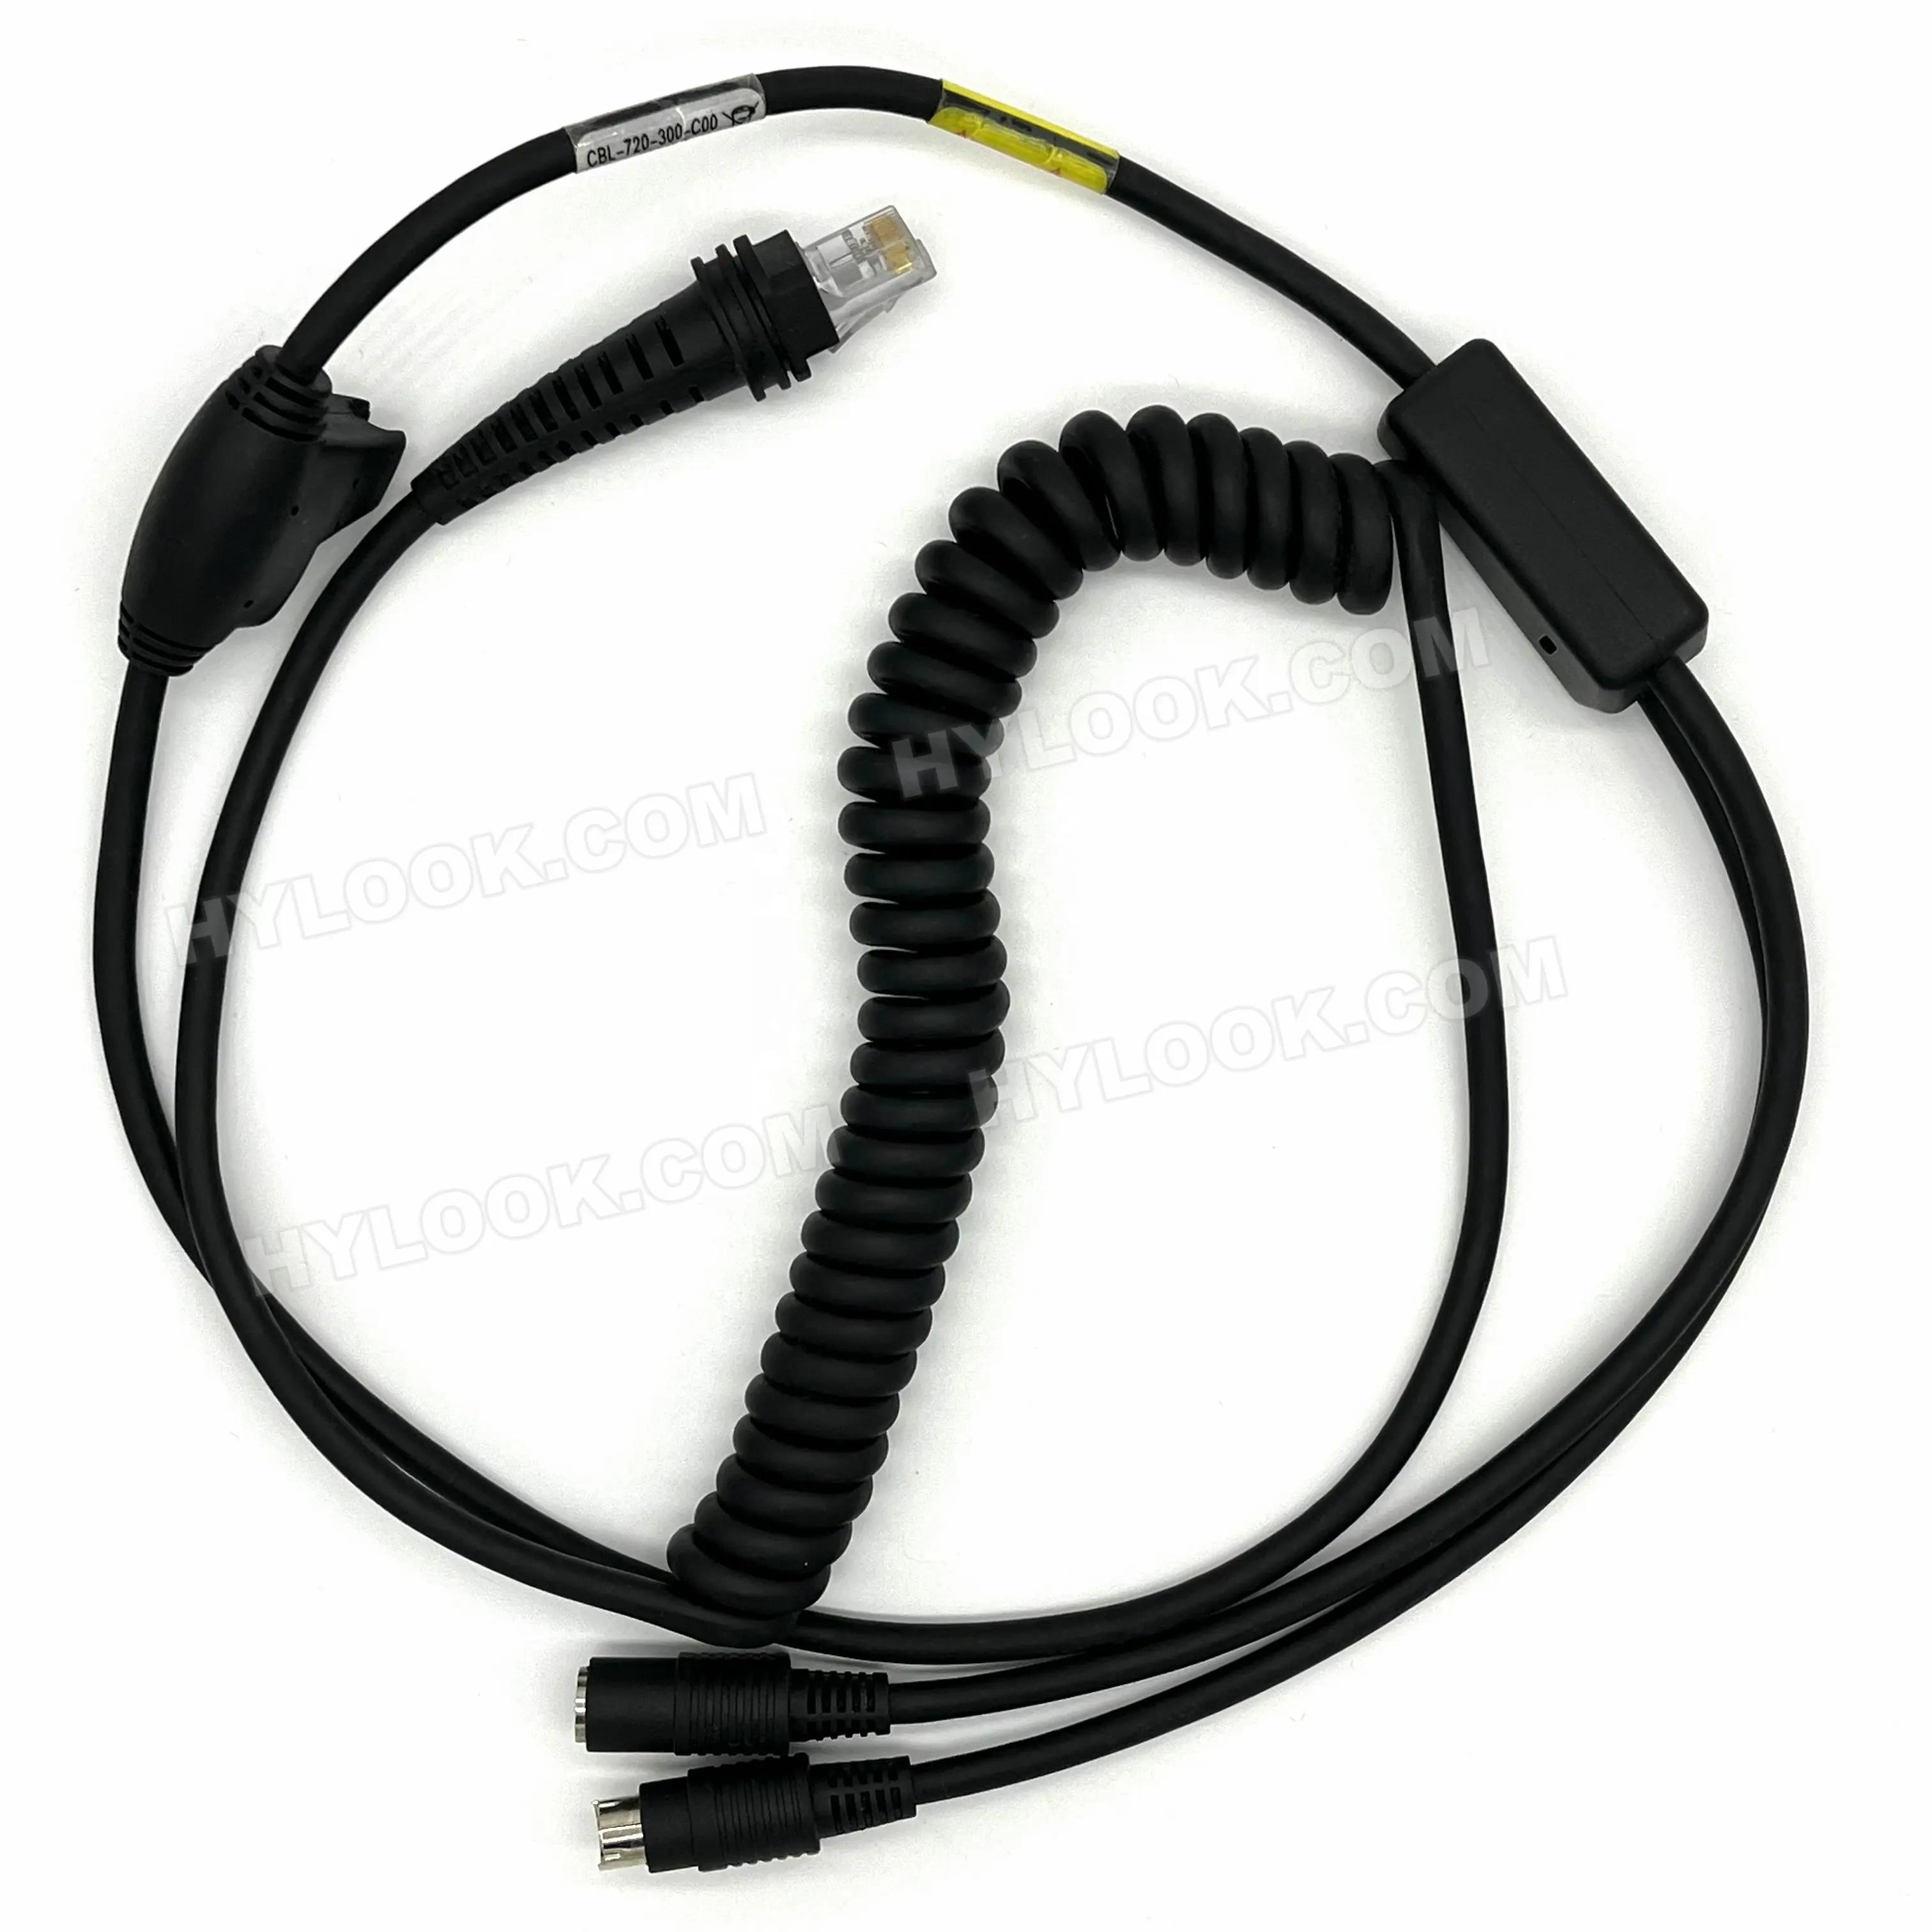 Сканер штрих-кода Honeywell 1250G PS2 CBL-720-300-C00 HSM 5V PS-2 PR4512 REV 6pin женский 6pin штекерным RJ45 с куртка черный спиральный кабель